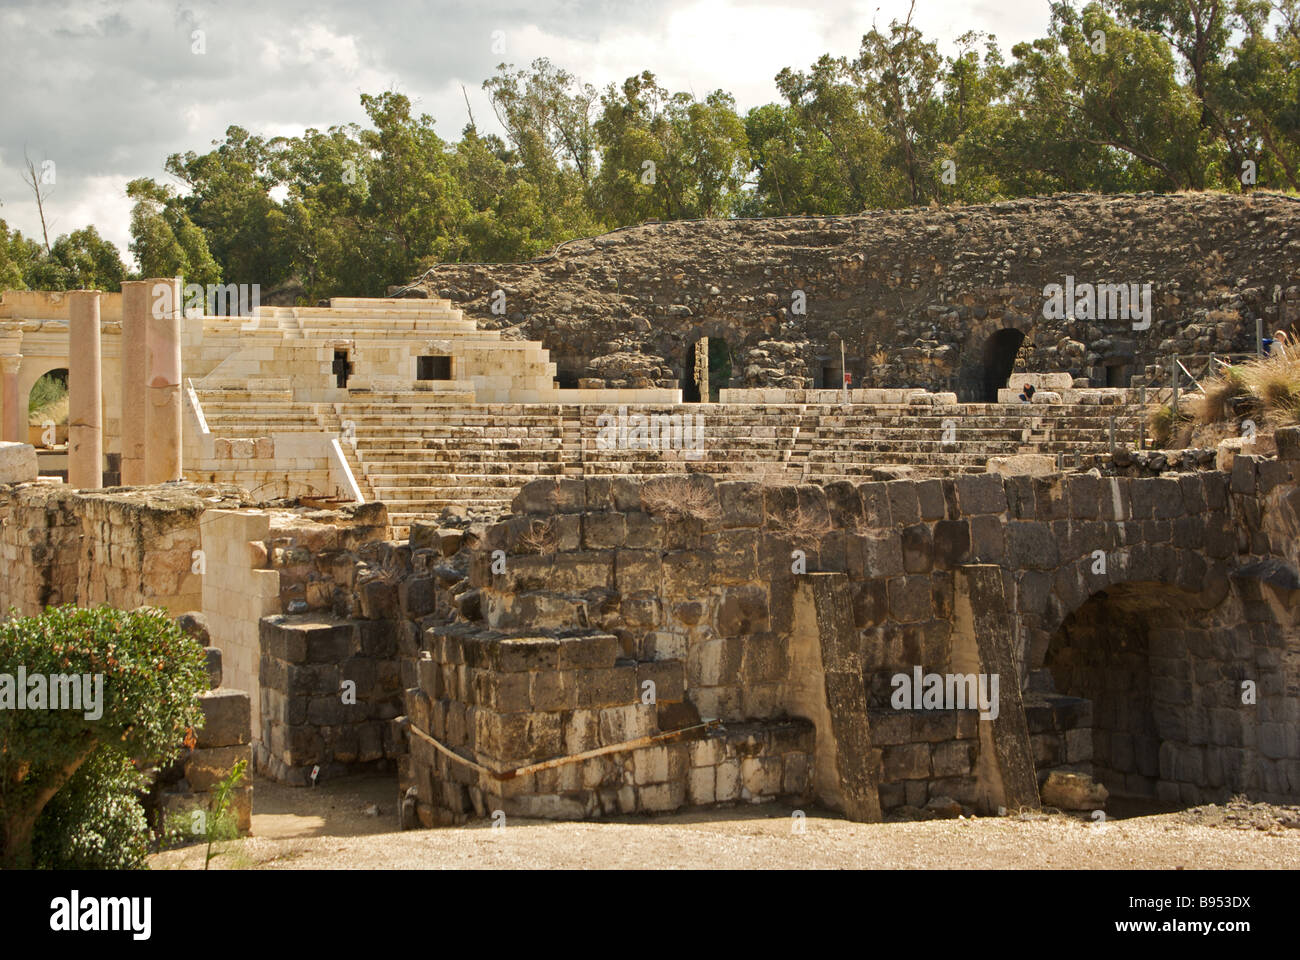 Sedile 7000 Beth Shean teatro romano della città bizantina Scythopolis meglio conservato teatro antico in Israele Foto Stock